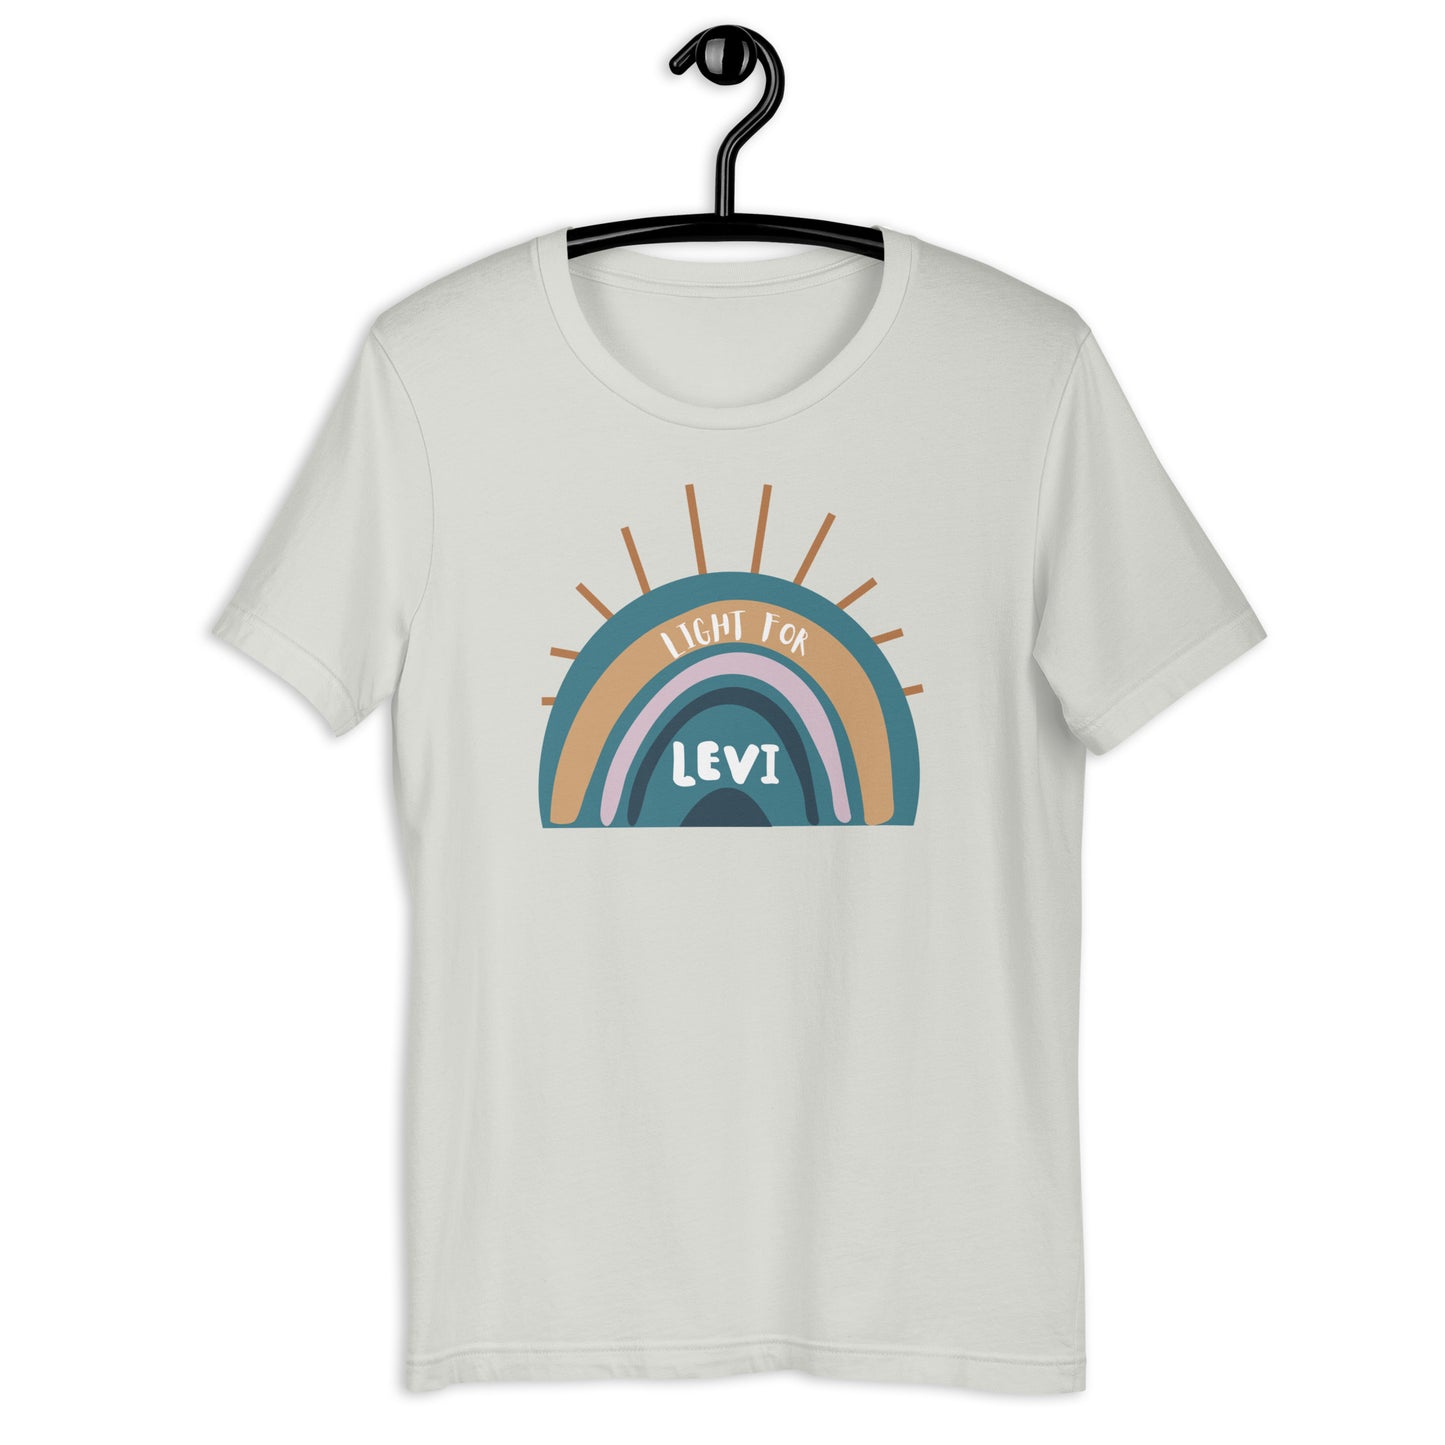 Light For Levi — Adult Unisex Tee